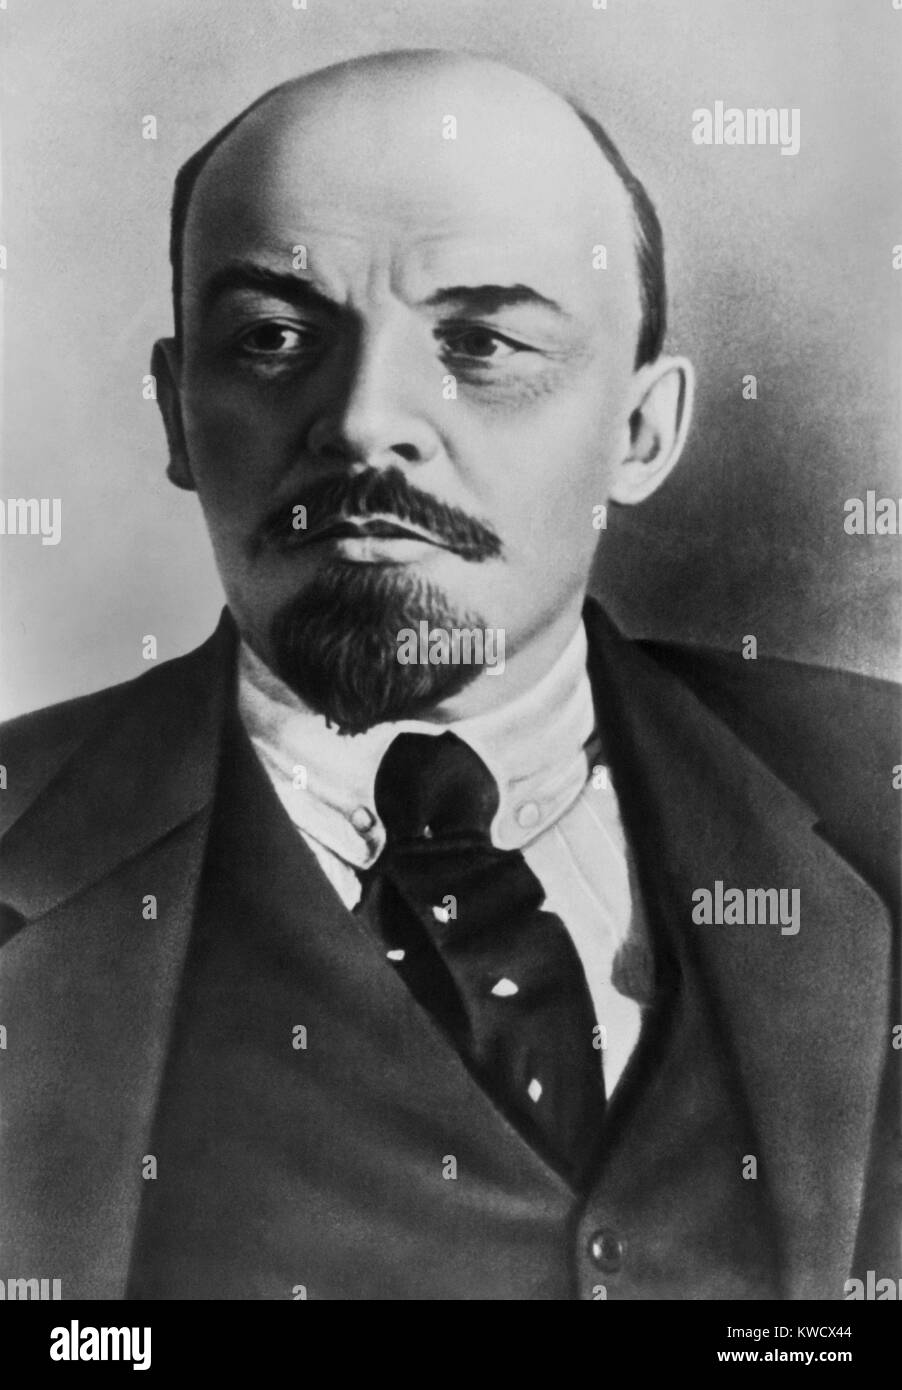 Lenin, Wladimir Iljitsch Uljanov C. 1920. Russische kommunistische Revolutionär, Politiker und Theoretiker. Er führte die bolschewistische Revolution und die russische Regierung von 1918-1924 (BSLOC 2017 2 15) Stockfoto